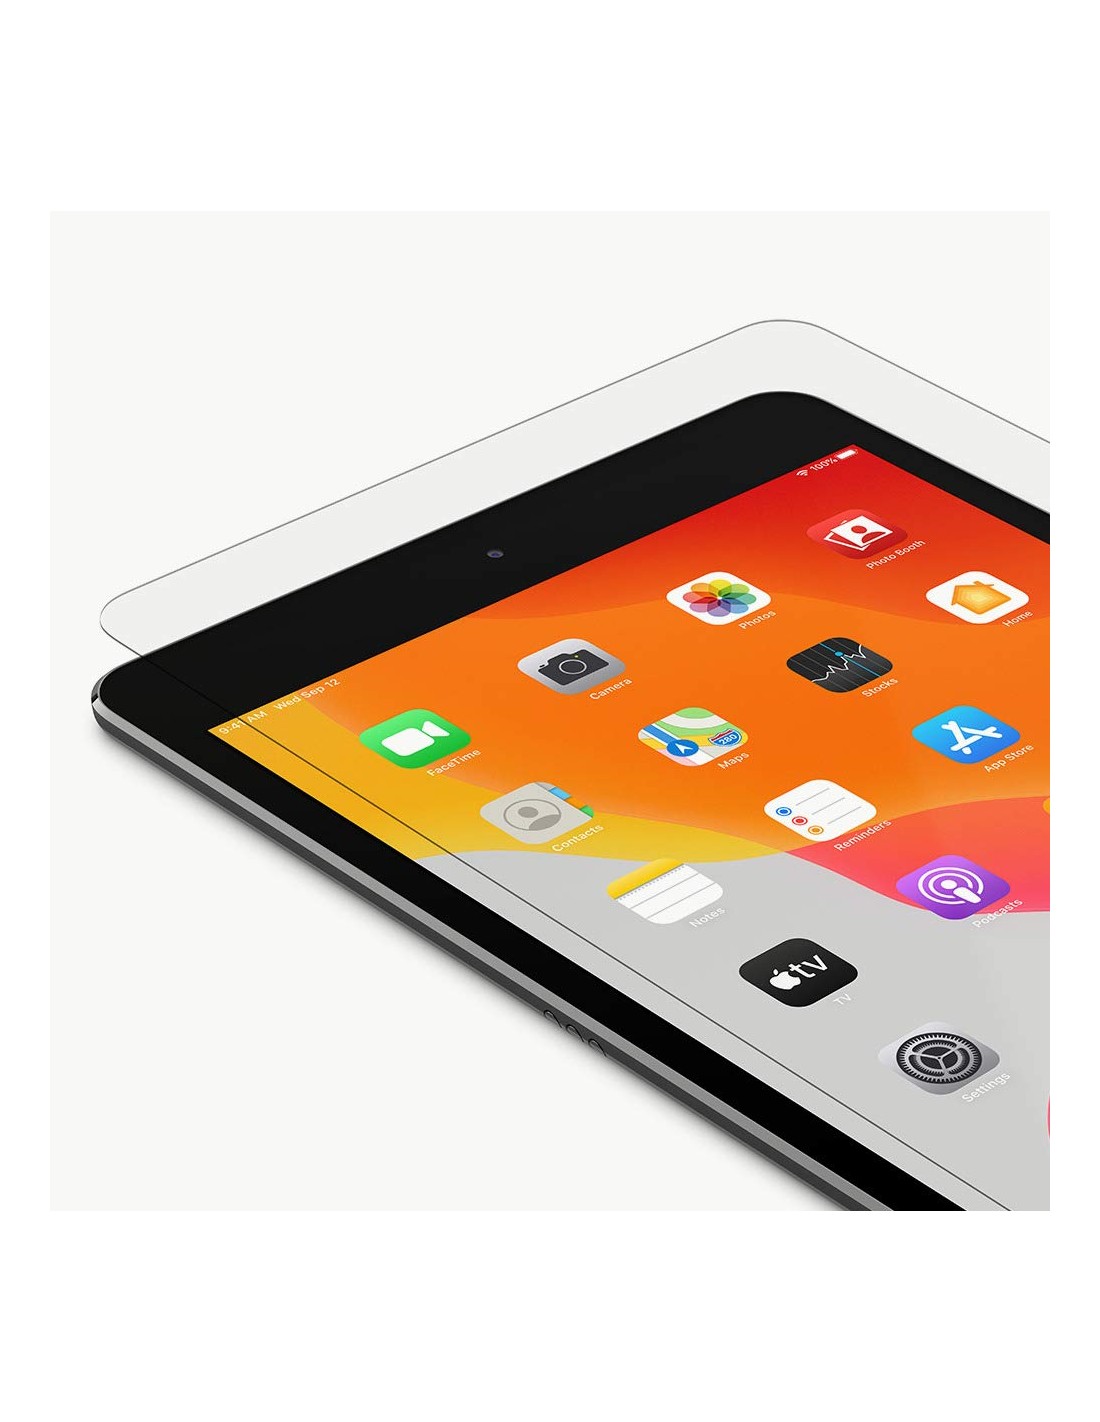 Protection D'écran belkin En Verre Trempé Pour Apple iPad 9.7″ – F8W933zz –  Best Buy Tunisie